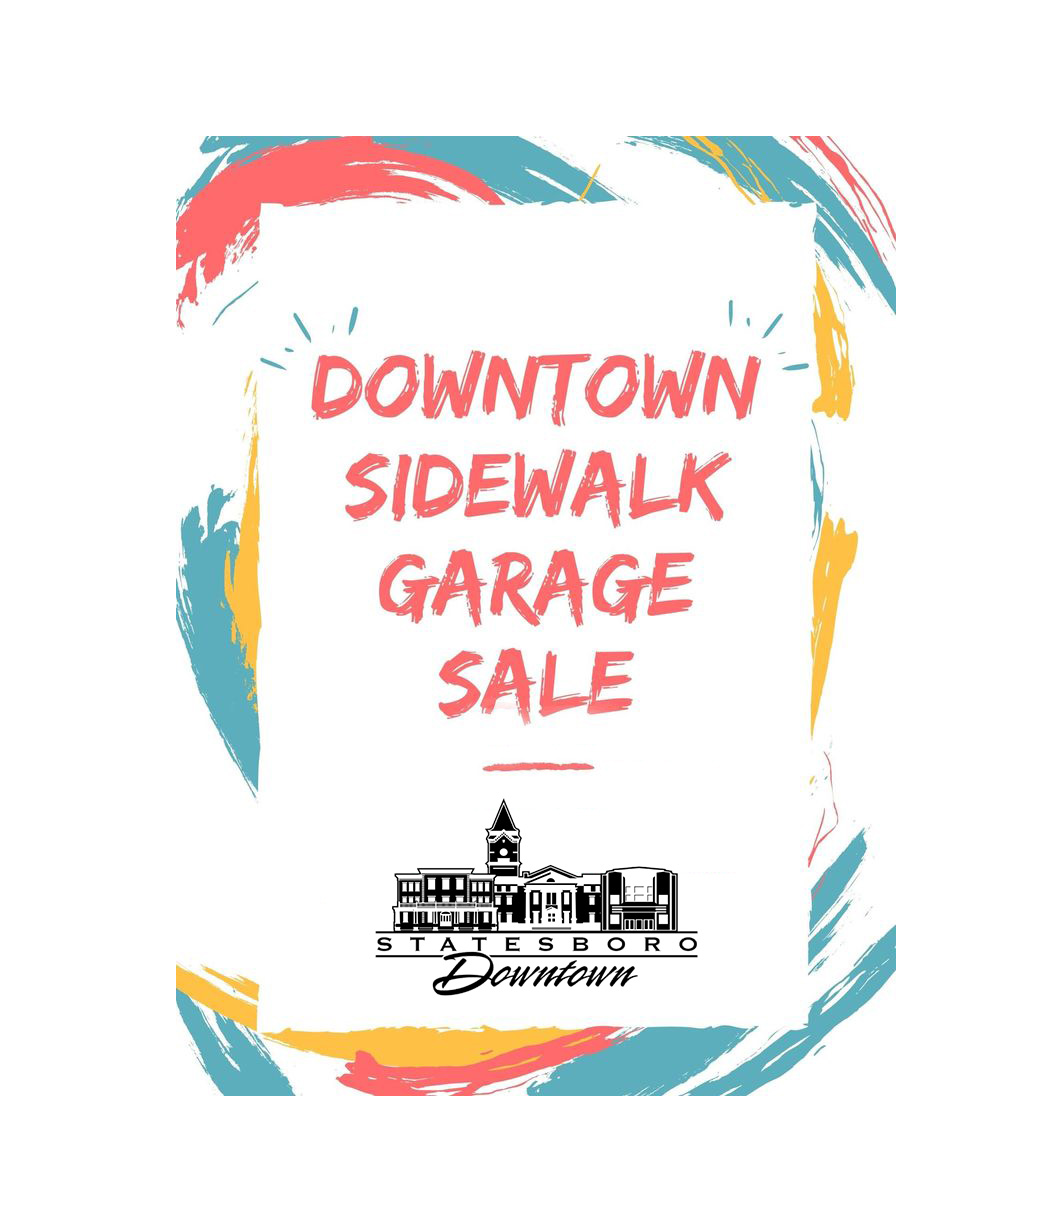 dsda statesboro downtown garage sale